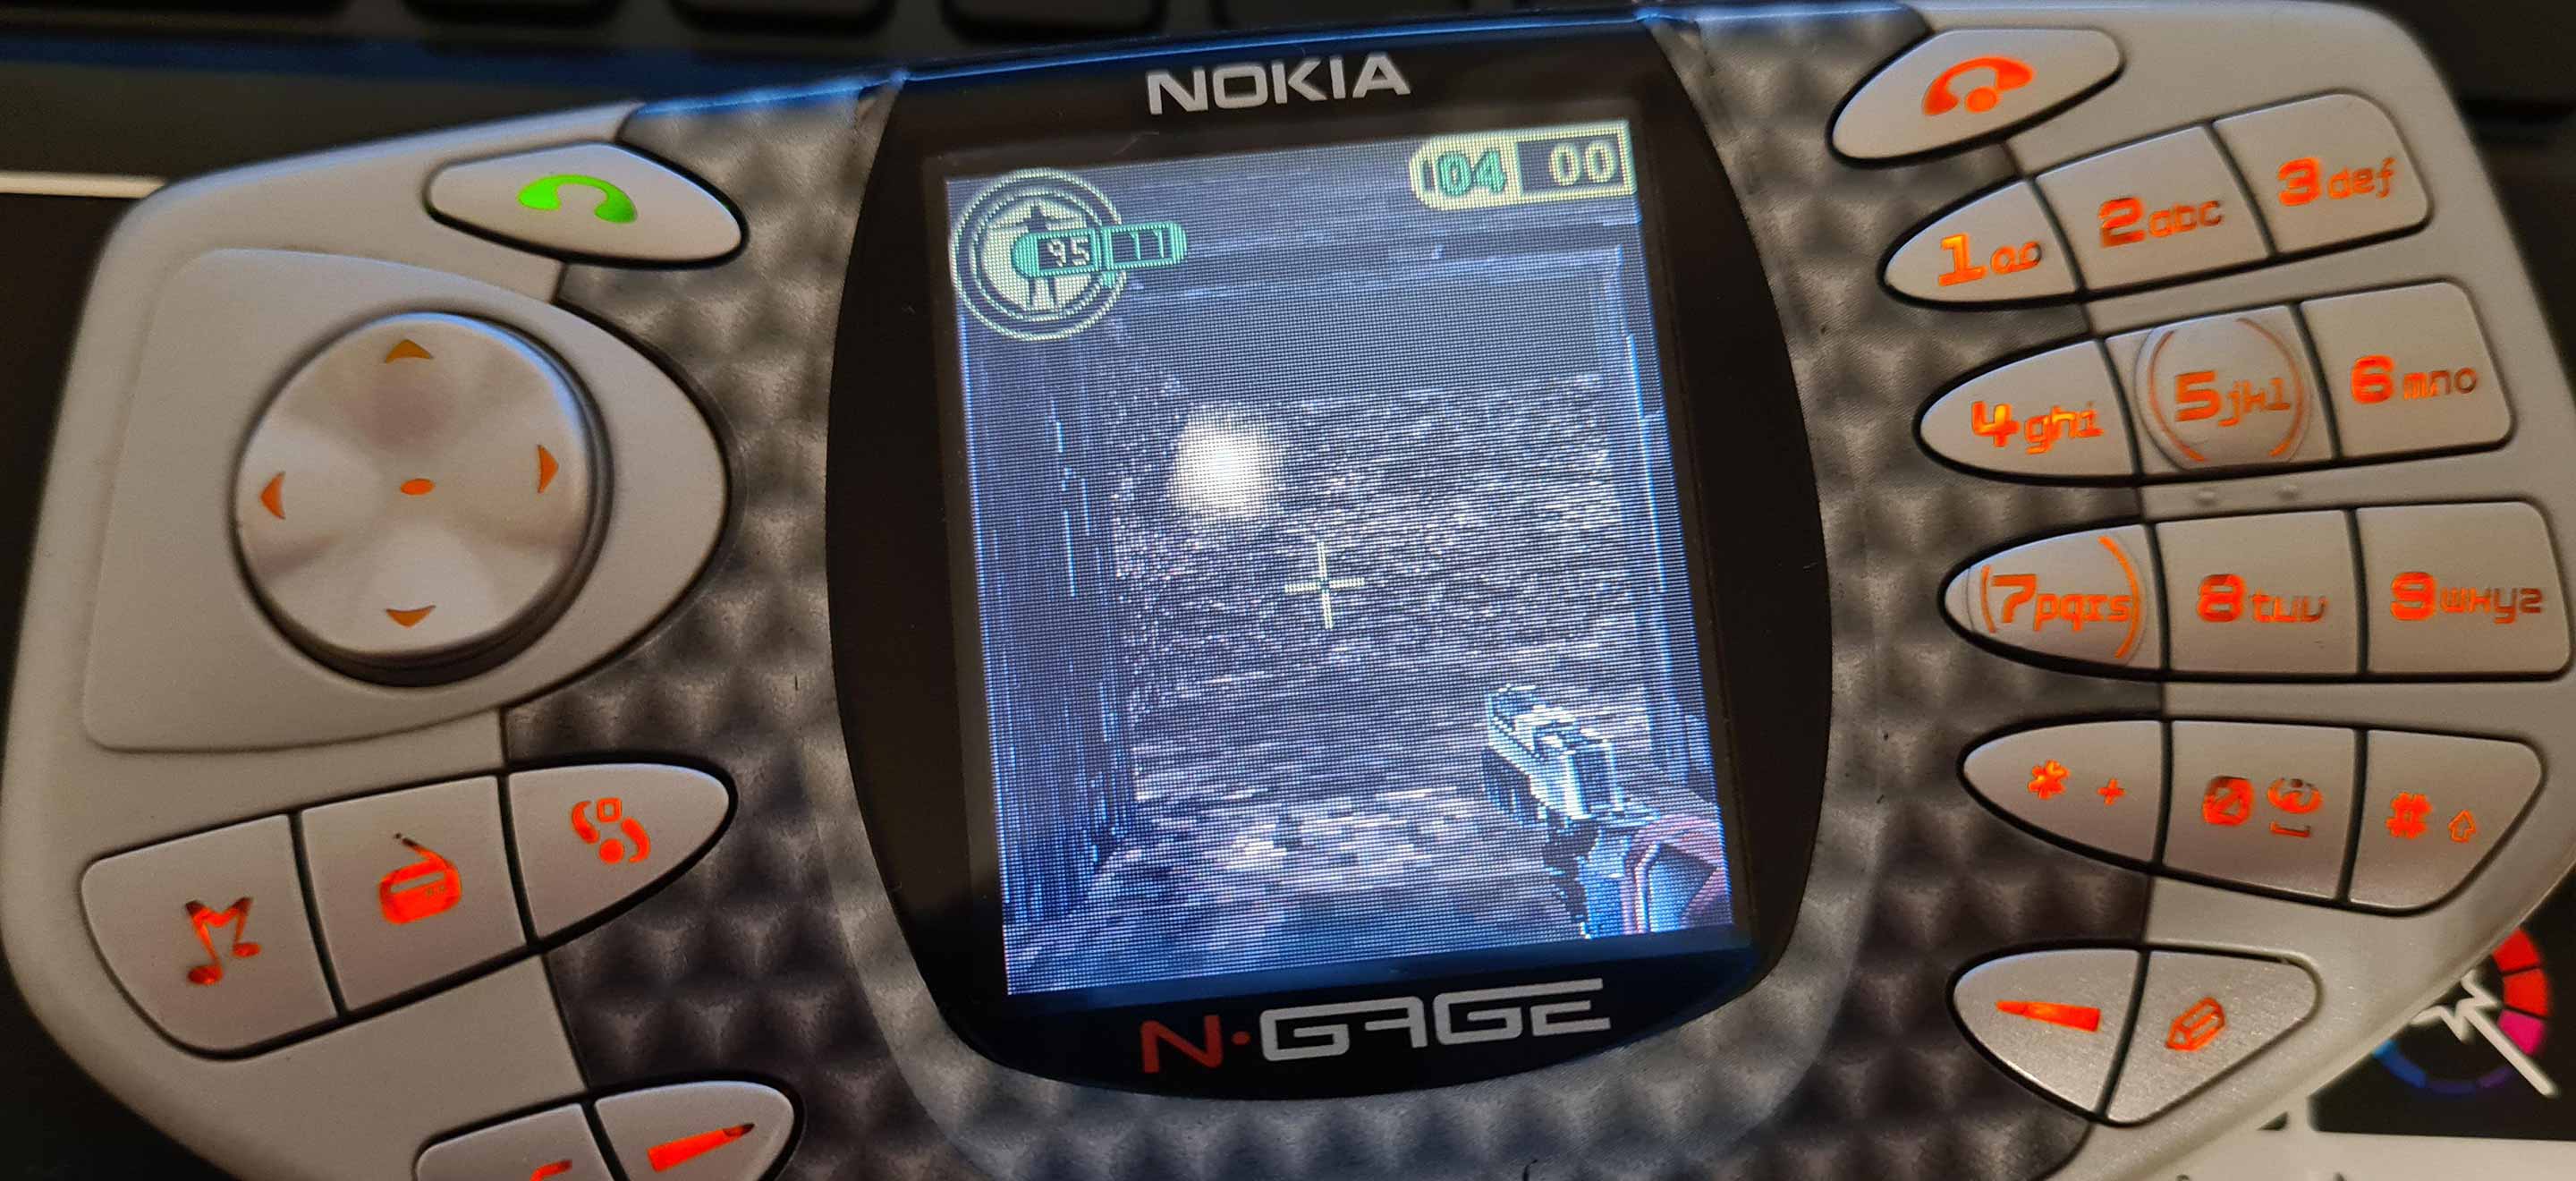 Nokia N-Gage : le vrai fiasco du jeu mobile